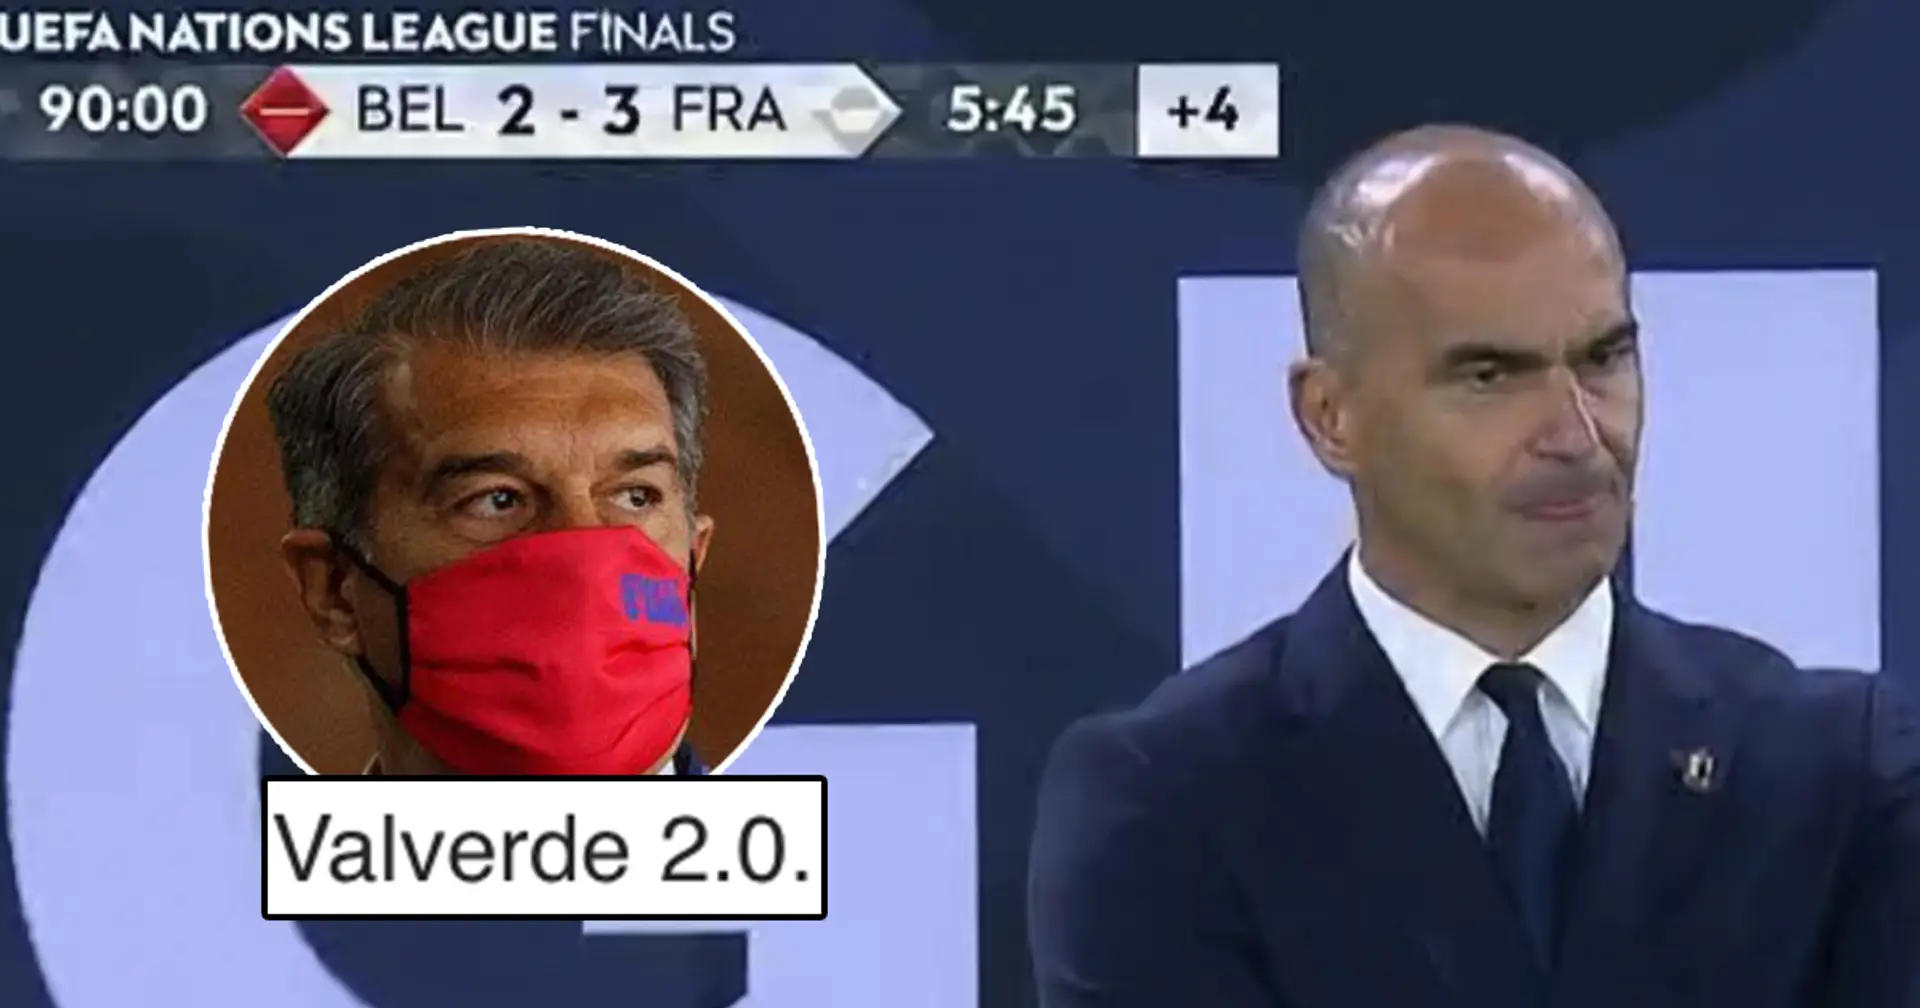 "Il ne devrait même pas rêver du Barca": Les Cules réagissent alors que Roberto Martinez mène 2-0 pour perdre 3-2 contre la France